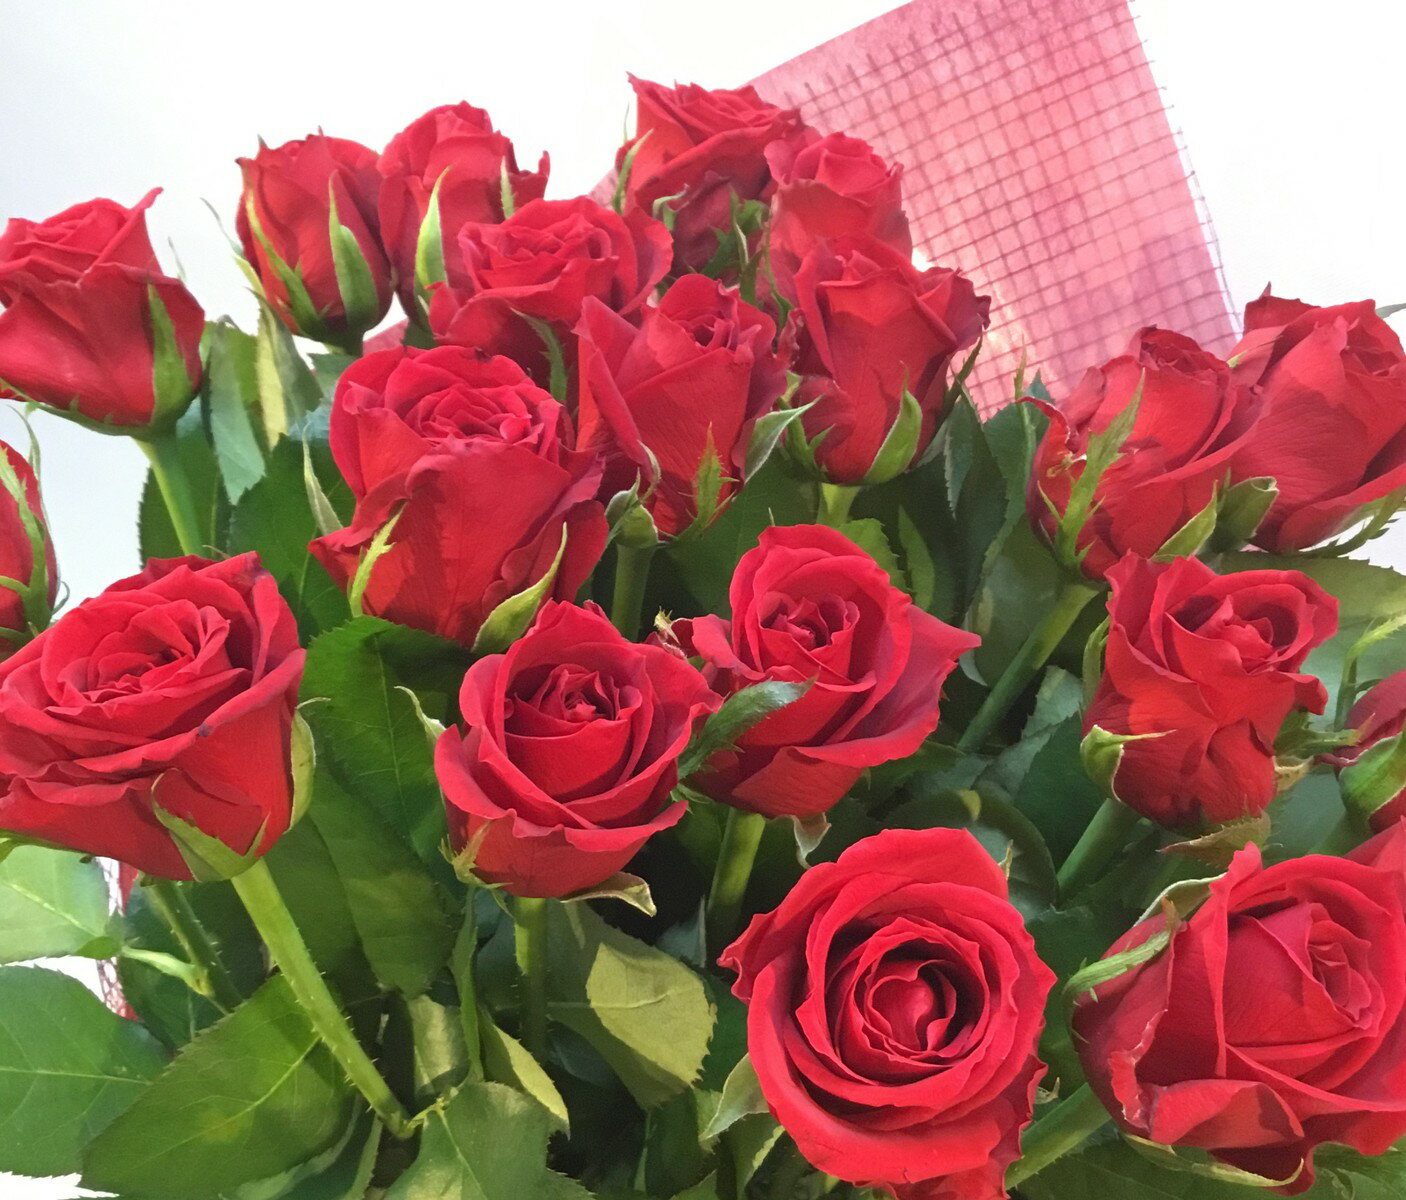 花 ギフト お誕生日 記念日 お祝い 贈呈 ばらの花束 国産 バラ 赤 レッド 豪華 ギフトラッピング付き赤バラ花束【赤ばら20本の花束】